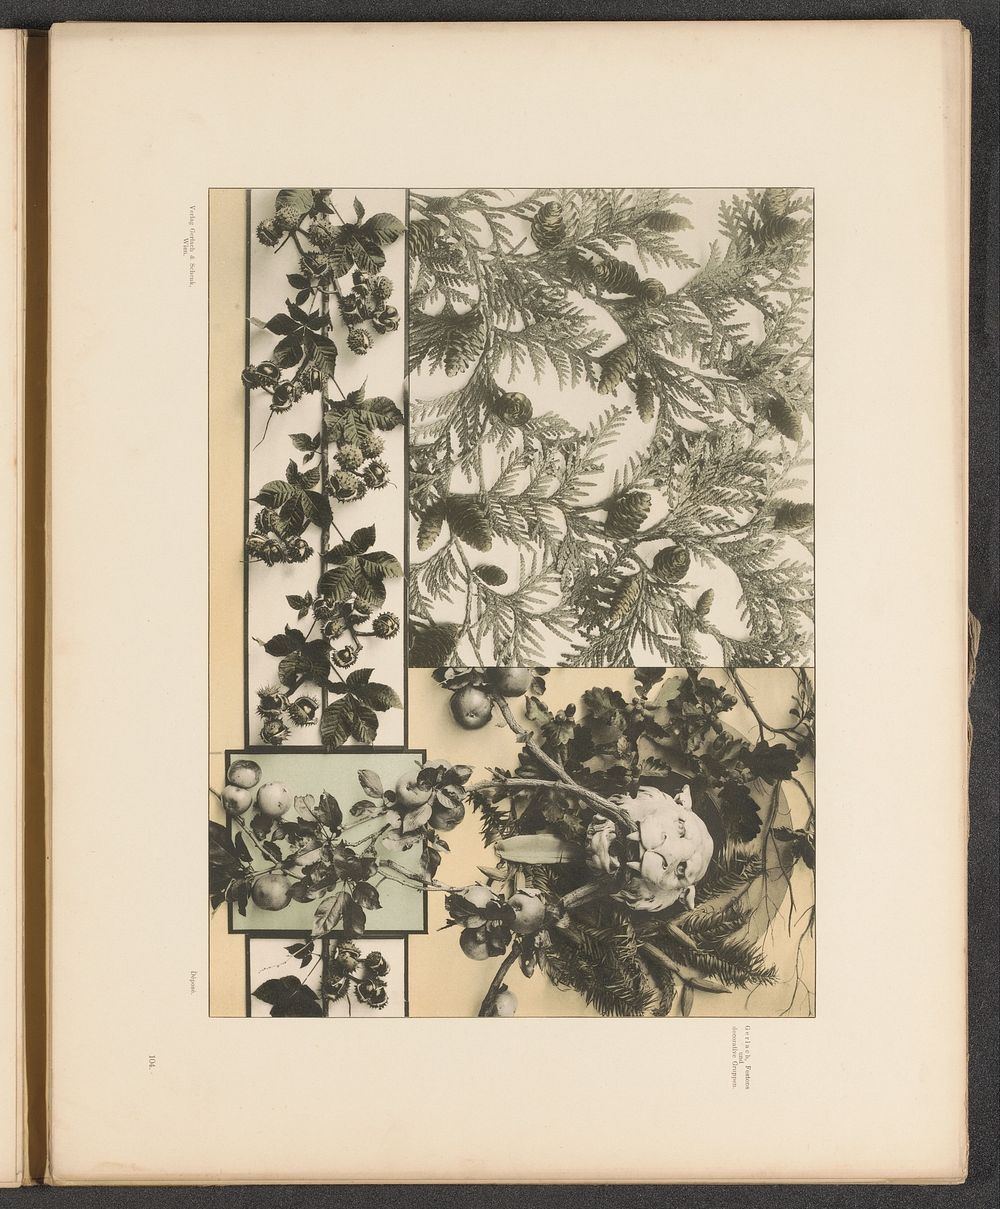 Vlakken met levensboom, kastanjetakken en appels met een leeuwenkop (c. 1887 - in or before 1897) by anonymous and Gerlach…